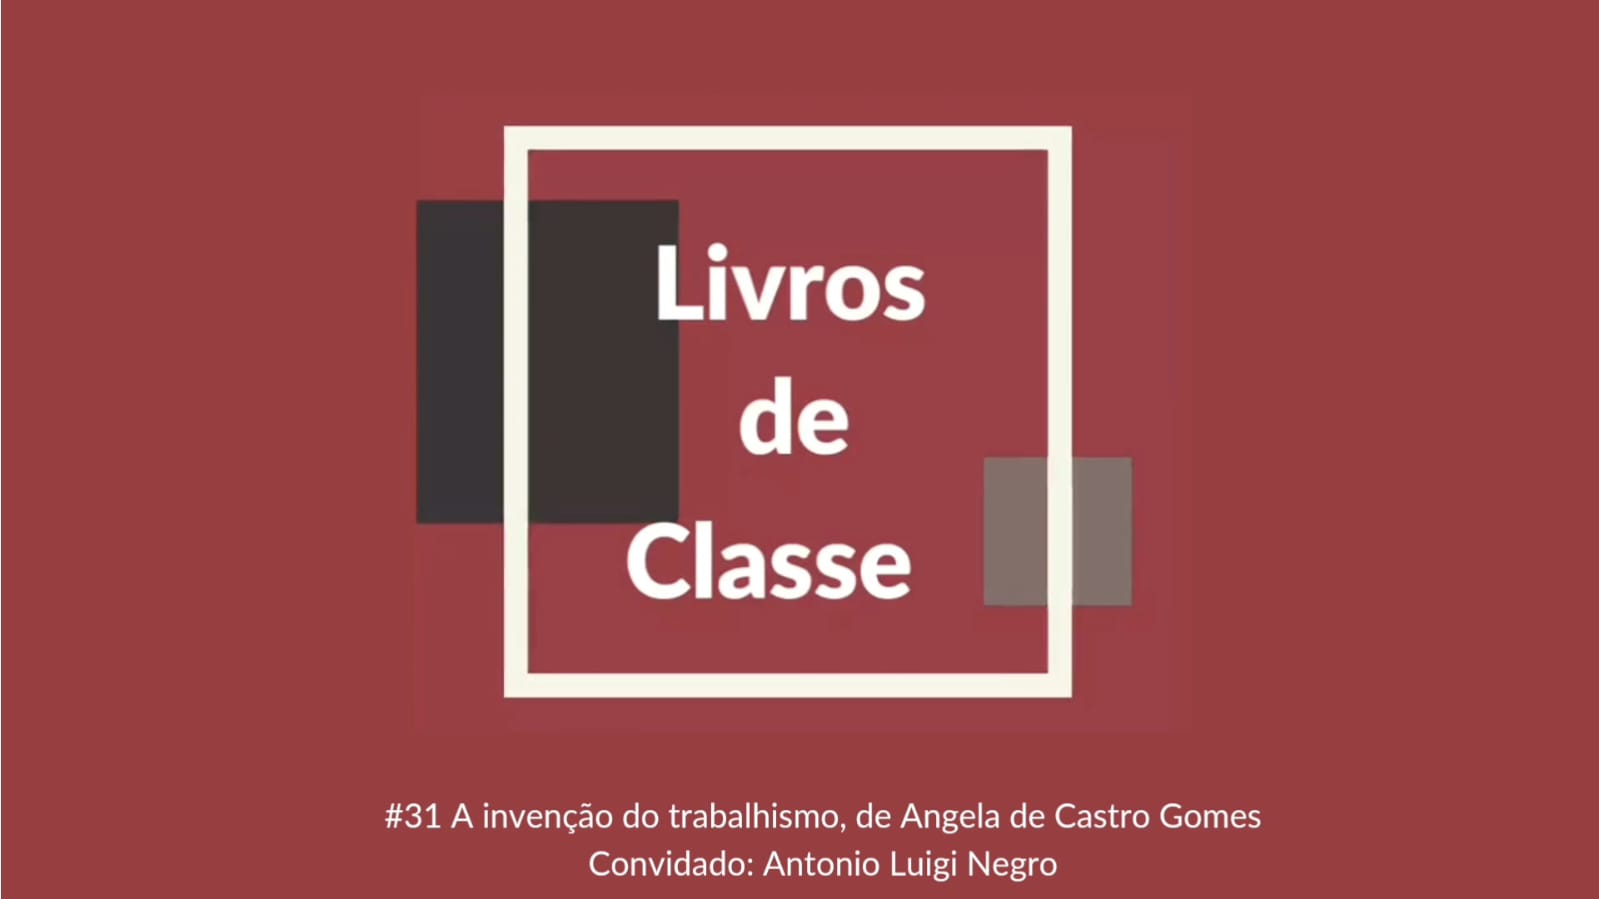 Livros de Classe #31: A invenção do trabalhismo, de Ângela de Castro Gomes, por Antônio Luigi Negro